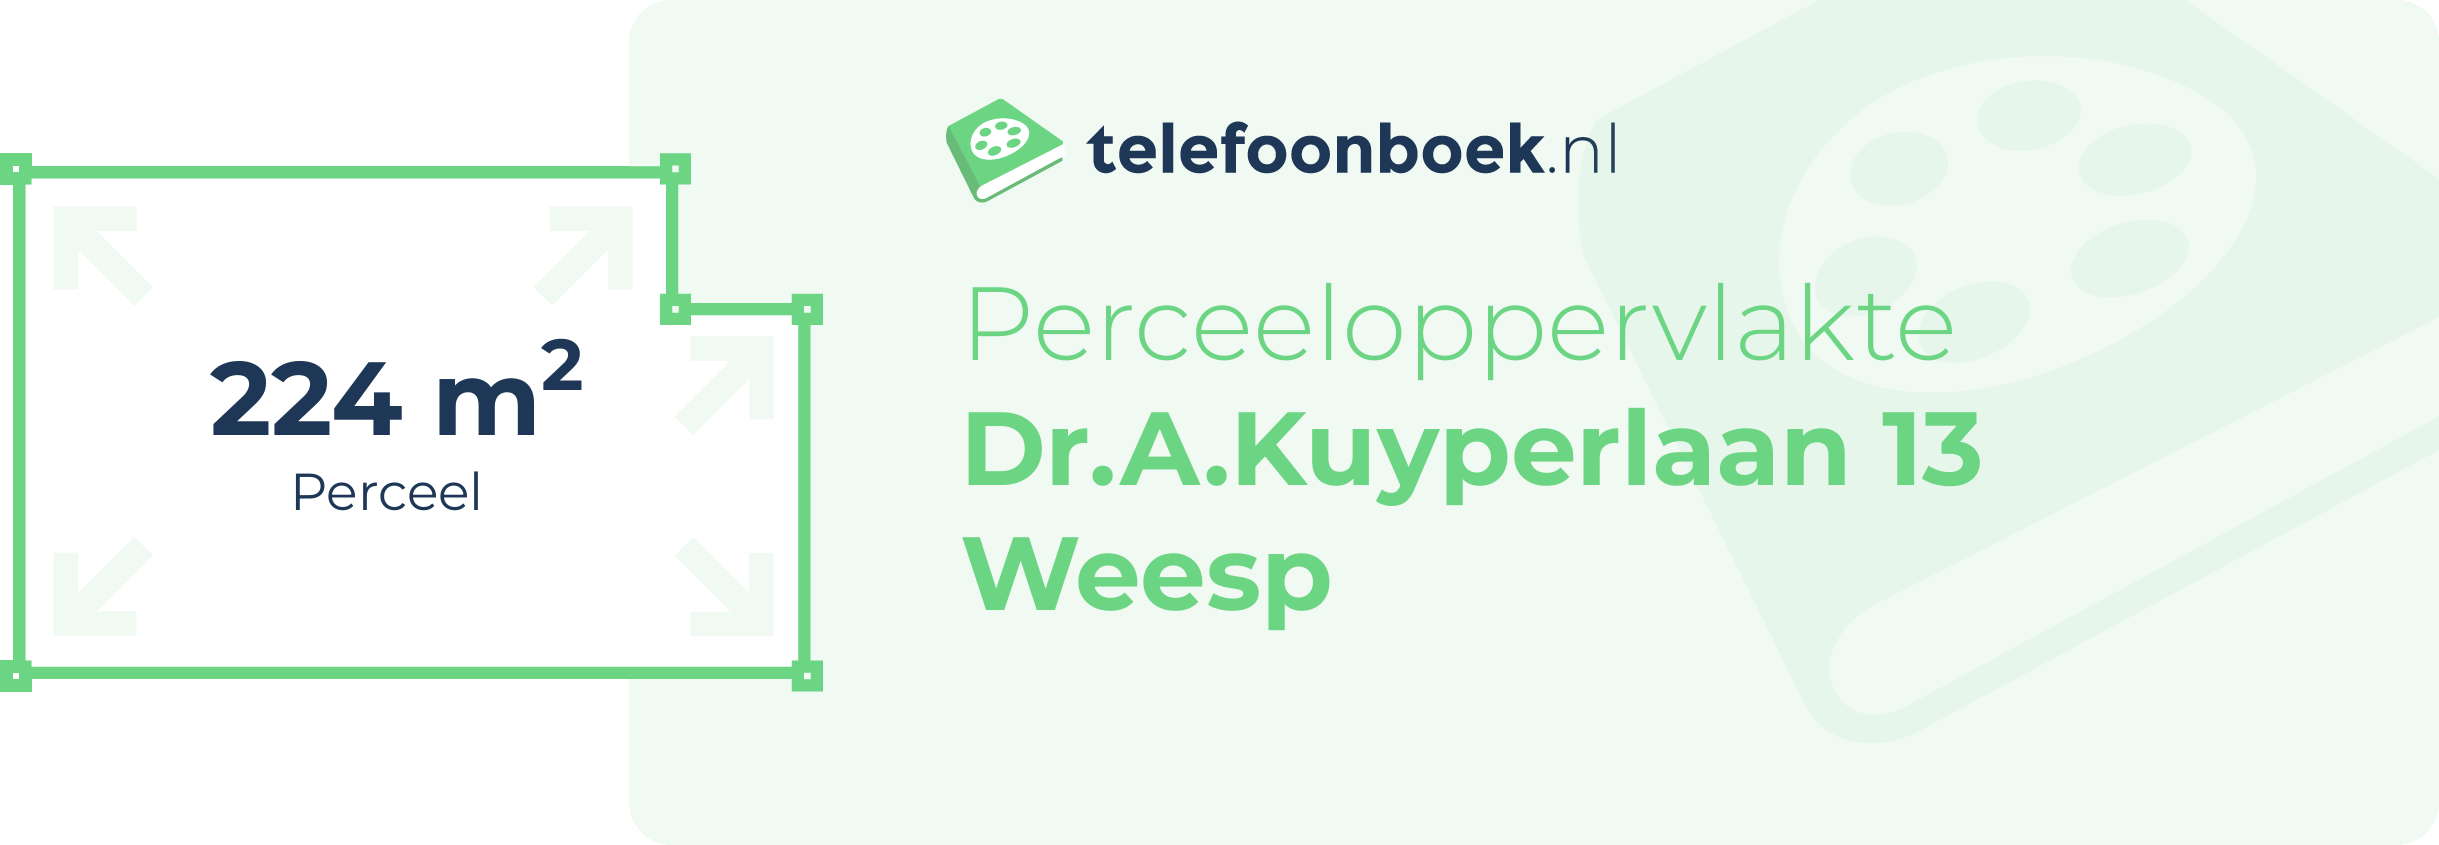 Perceeloppervlakte Dr.A.Kuyperlaan 13 Weesp